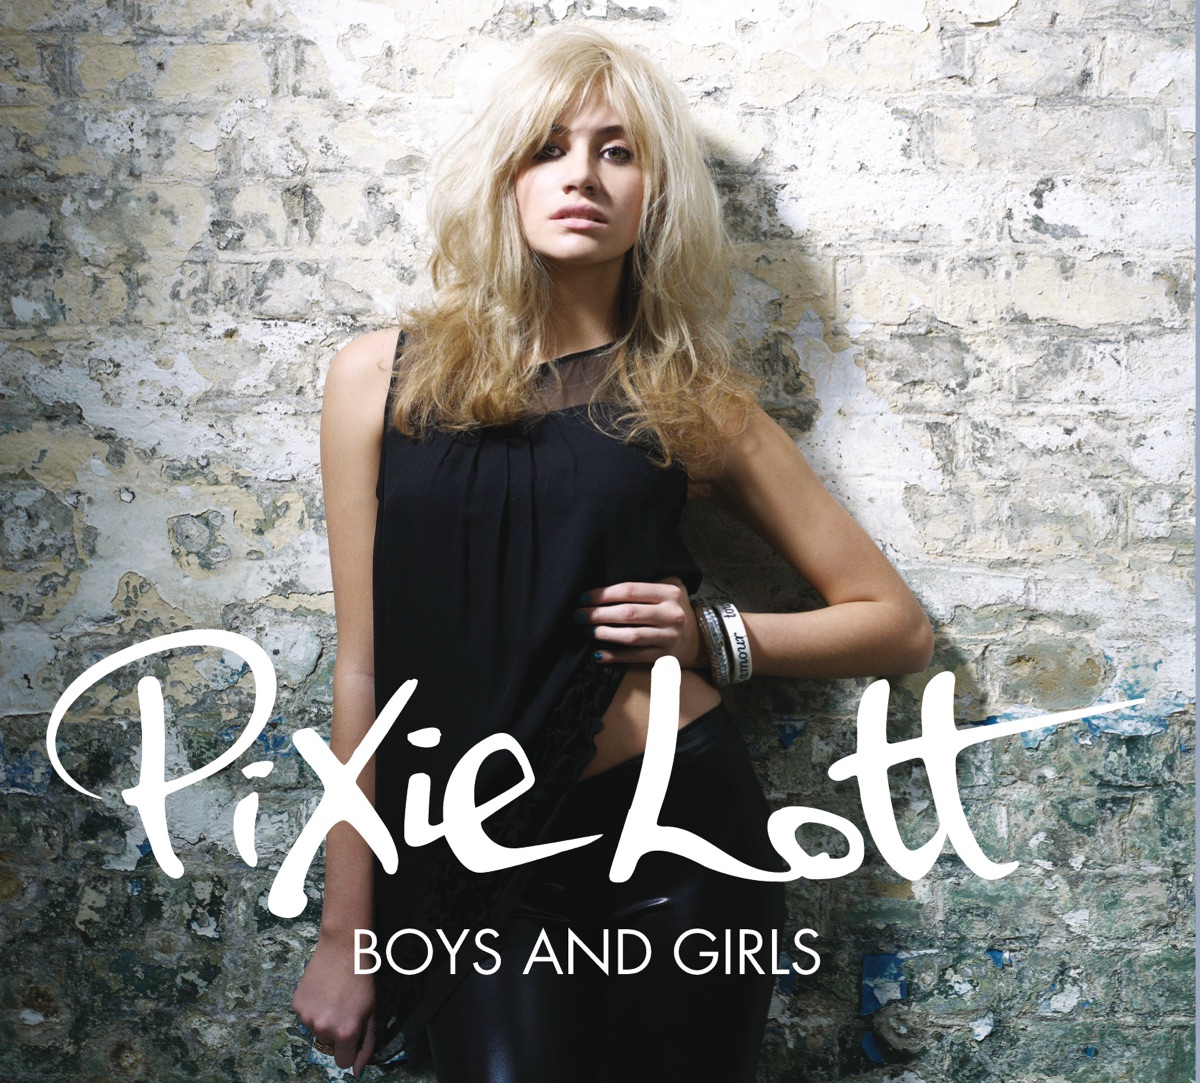 Pixie Lott Boys and Girls cover artwork